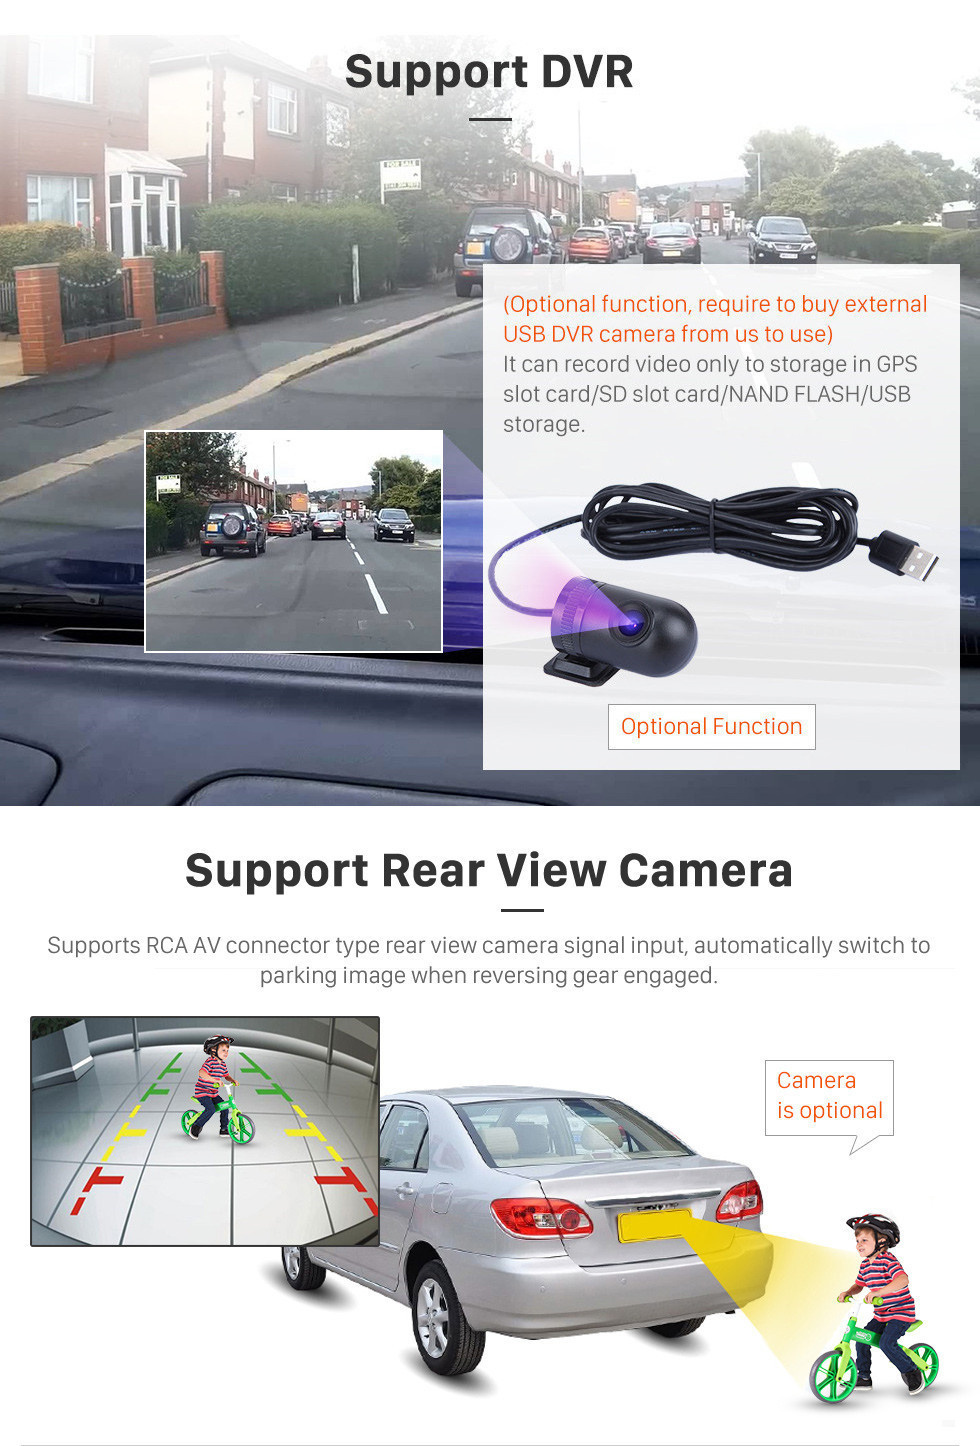 Seicane 10,1-дюймовый Android 11.0 Radio для 2013 Honda Accord 9 Высокая версия Bluetooth с сенсорным экраном GPS-навигация Carplay Поддержка USB OBD2 SWC